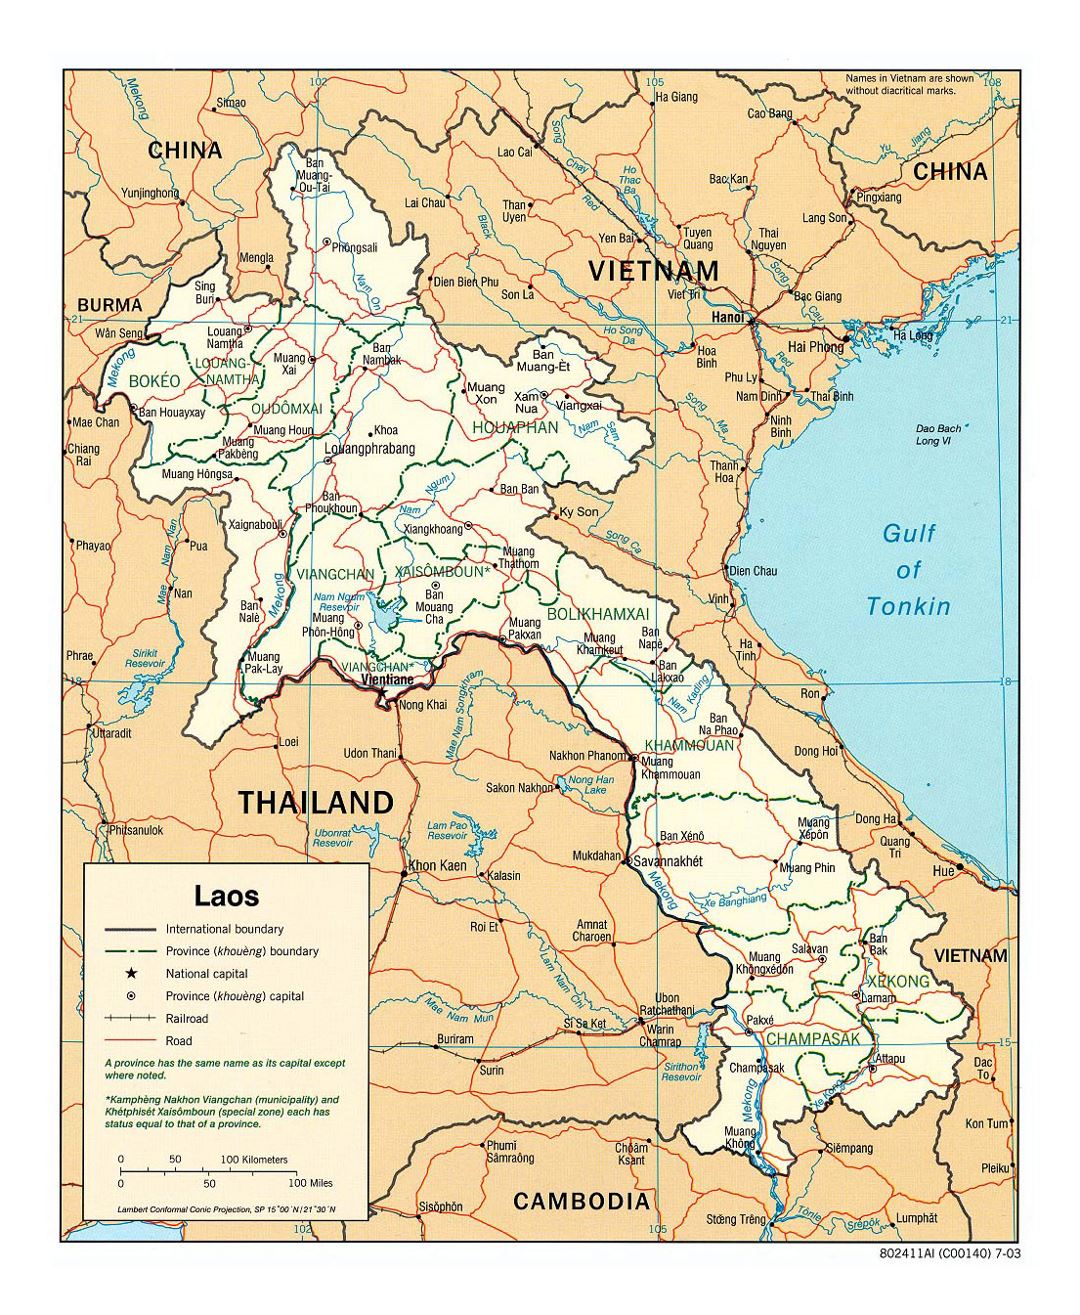 Detallado mapa político y administrativo de Laos con carreteras, ferrocarriles y principales ciudades - 2003